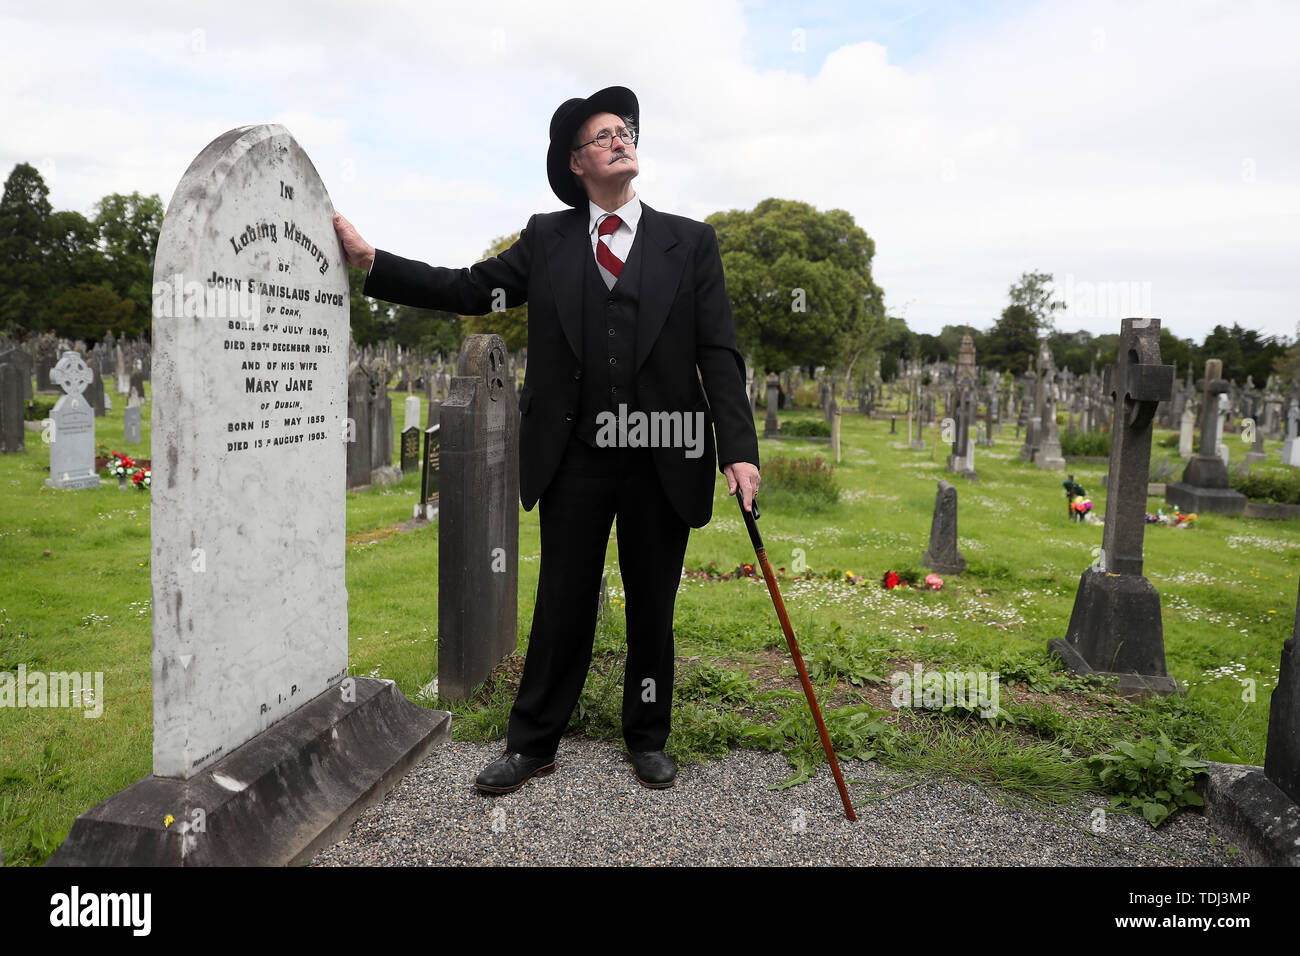 James Joyce Doppelgänger John shevlin besucht das Grab der Autoren Eltern John stanislaus Joyce und seine Frau Mary Jane während der jährlichen Bloomsday Veranstaltung in Glasnevin Cemetery in Dublin, mit einem Reenactment aus dem 'Hades' Kapitel von James Joyce's Ulysses. Stockfoto